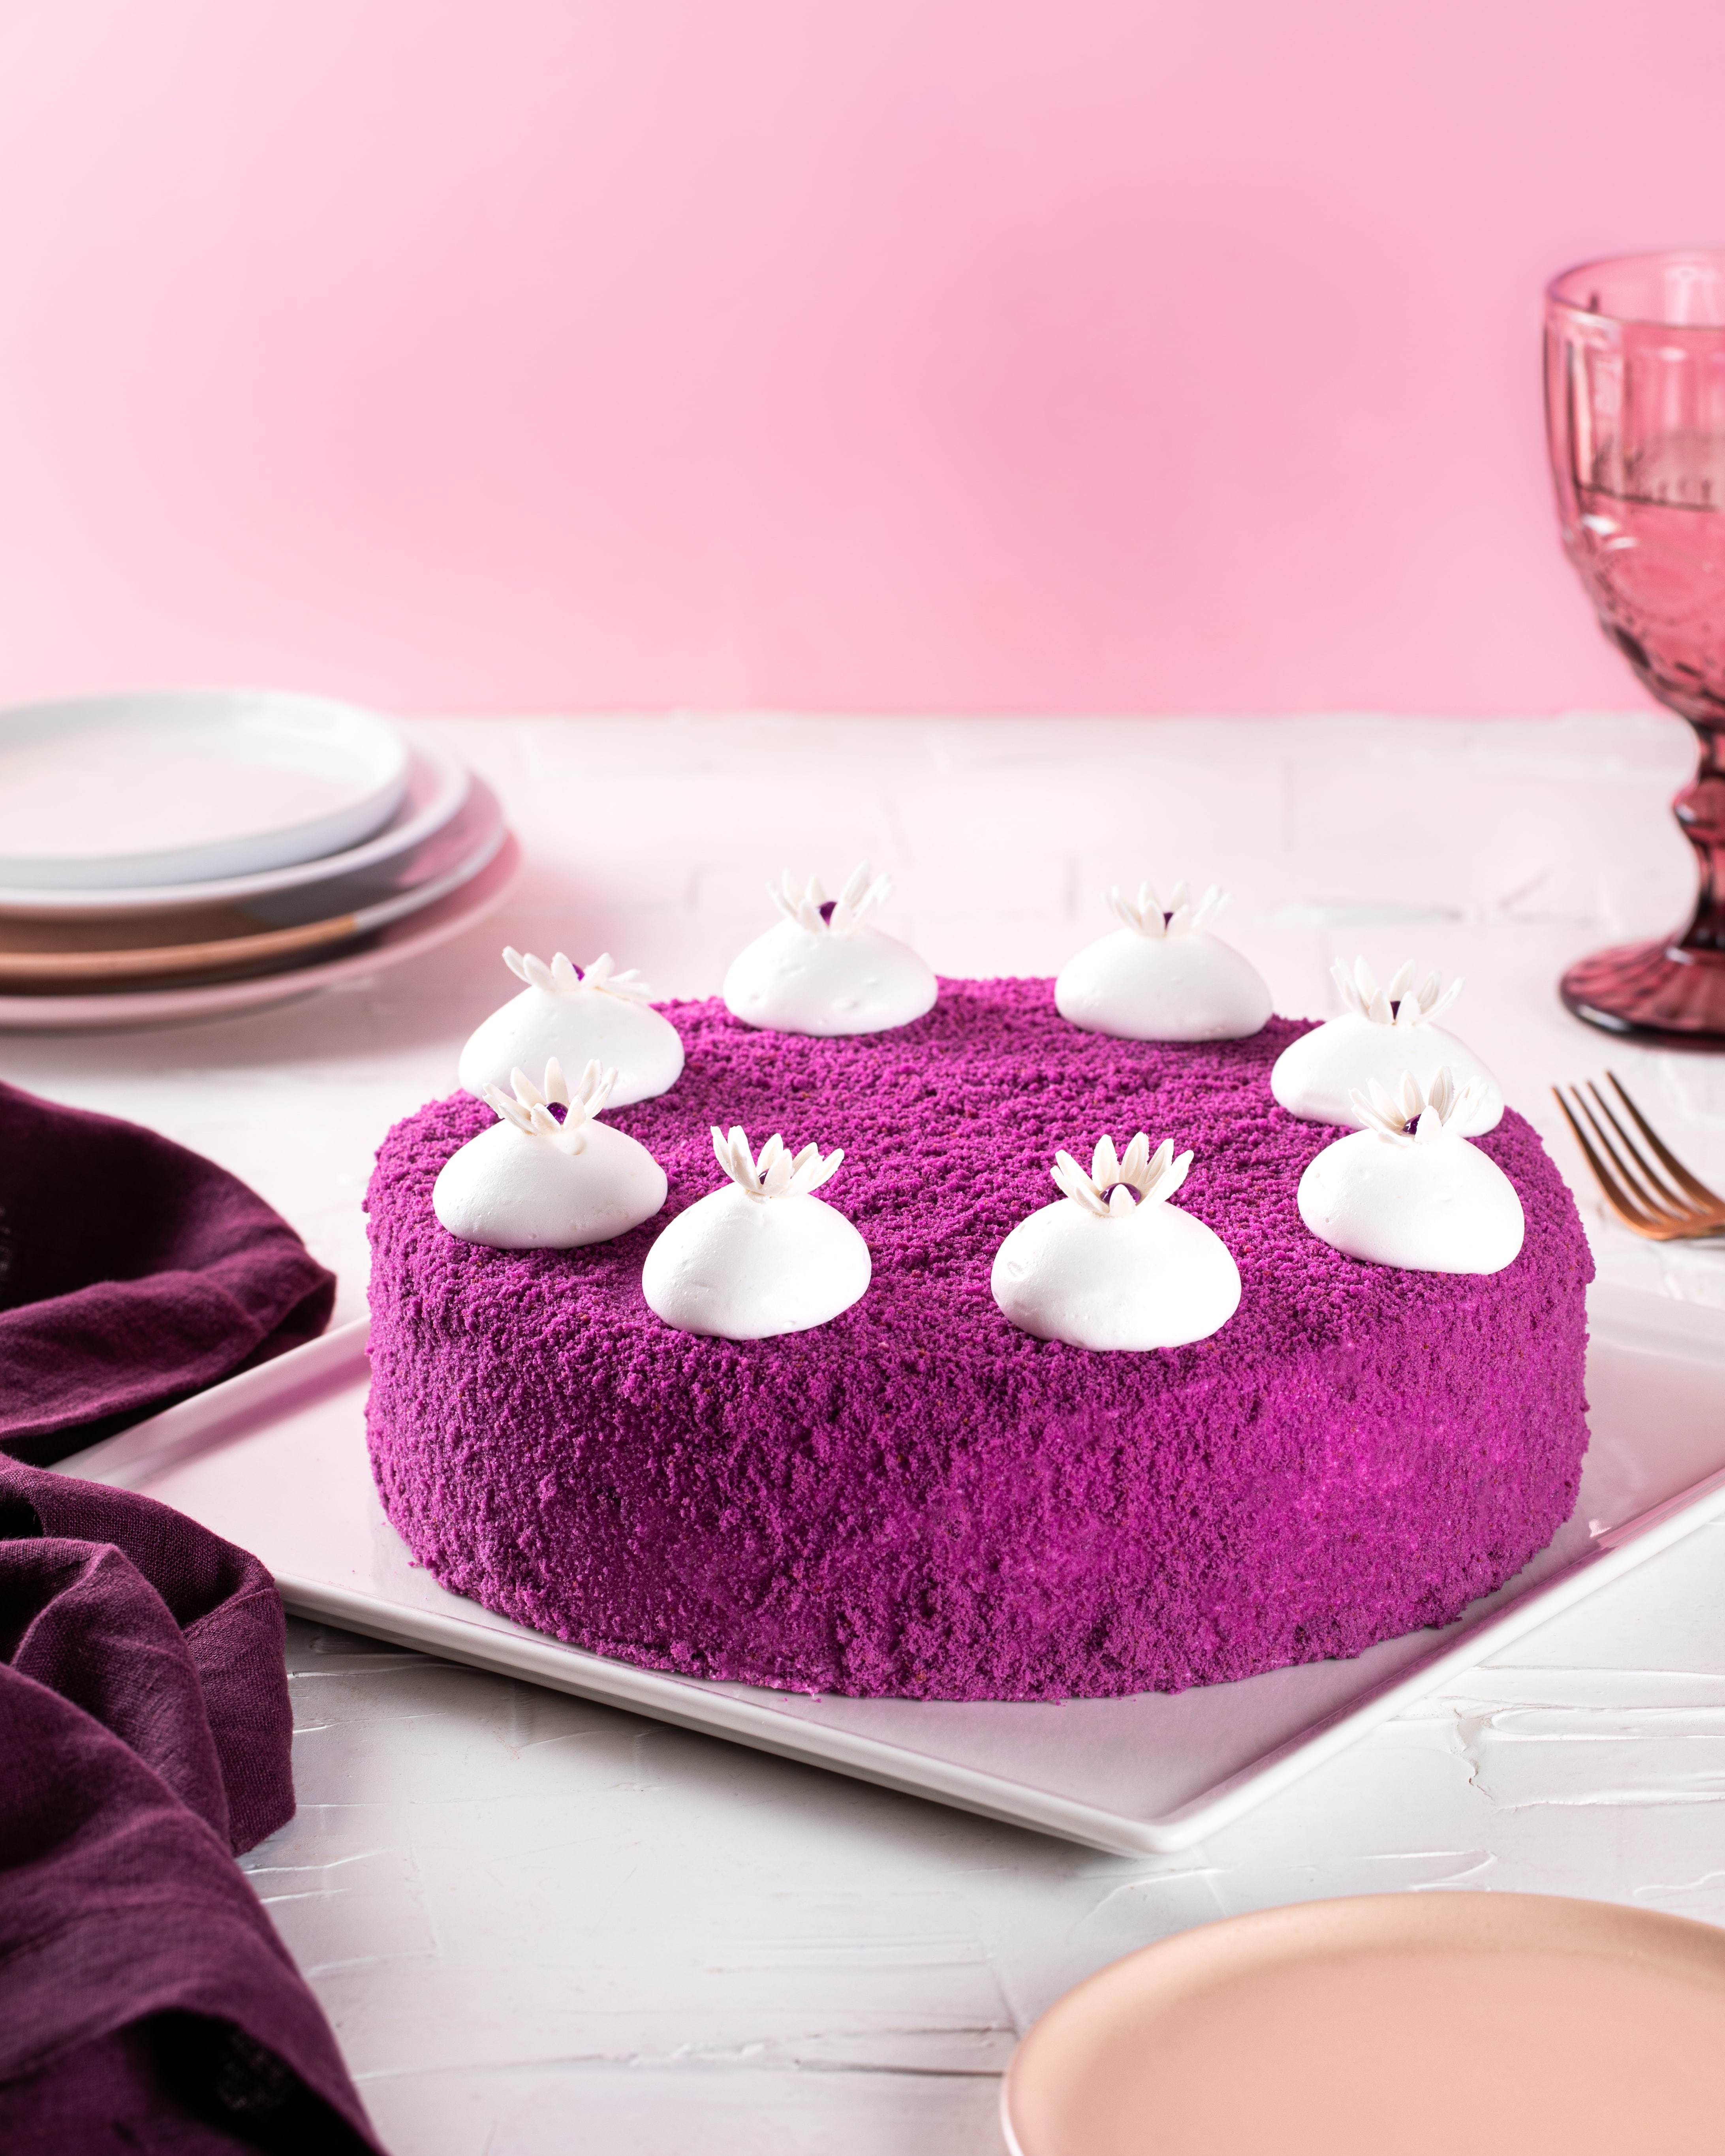 Buy Purple Velvet Cake Oman | Best Purple Velvet Cake in Oman | Modern ...